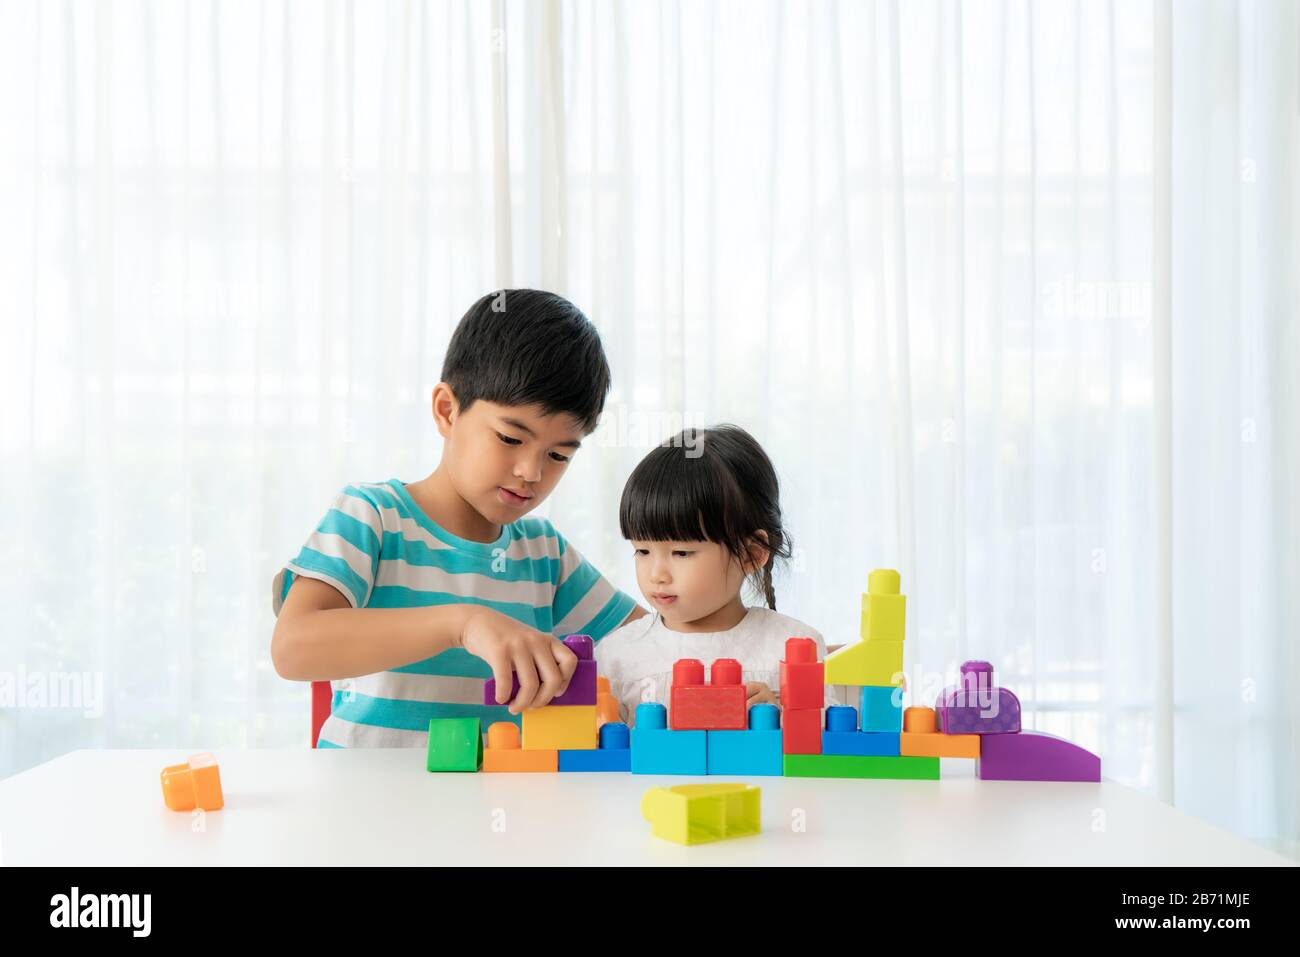 Un joli frère asiatique et sa sœur jouent avec un concepteur de blocs de jouets sur la table dans le salon à la maison. Concept de liaison de frère, d'amitié et d'apprentissage Banque D'Images